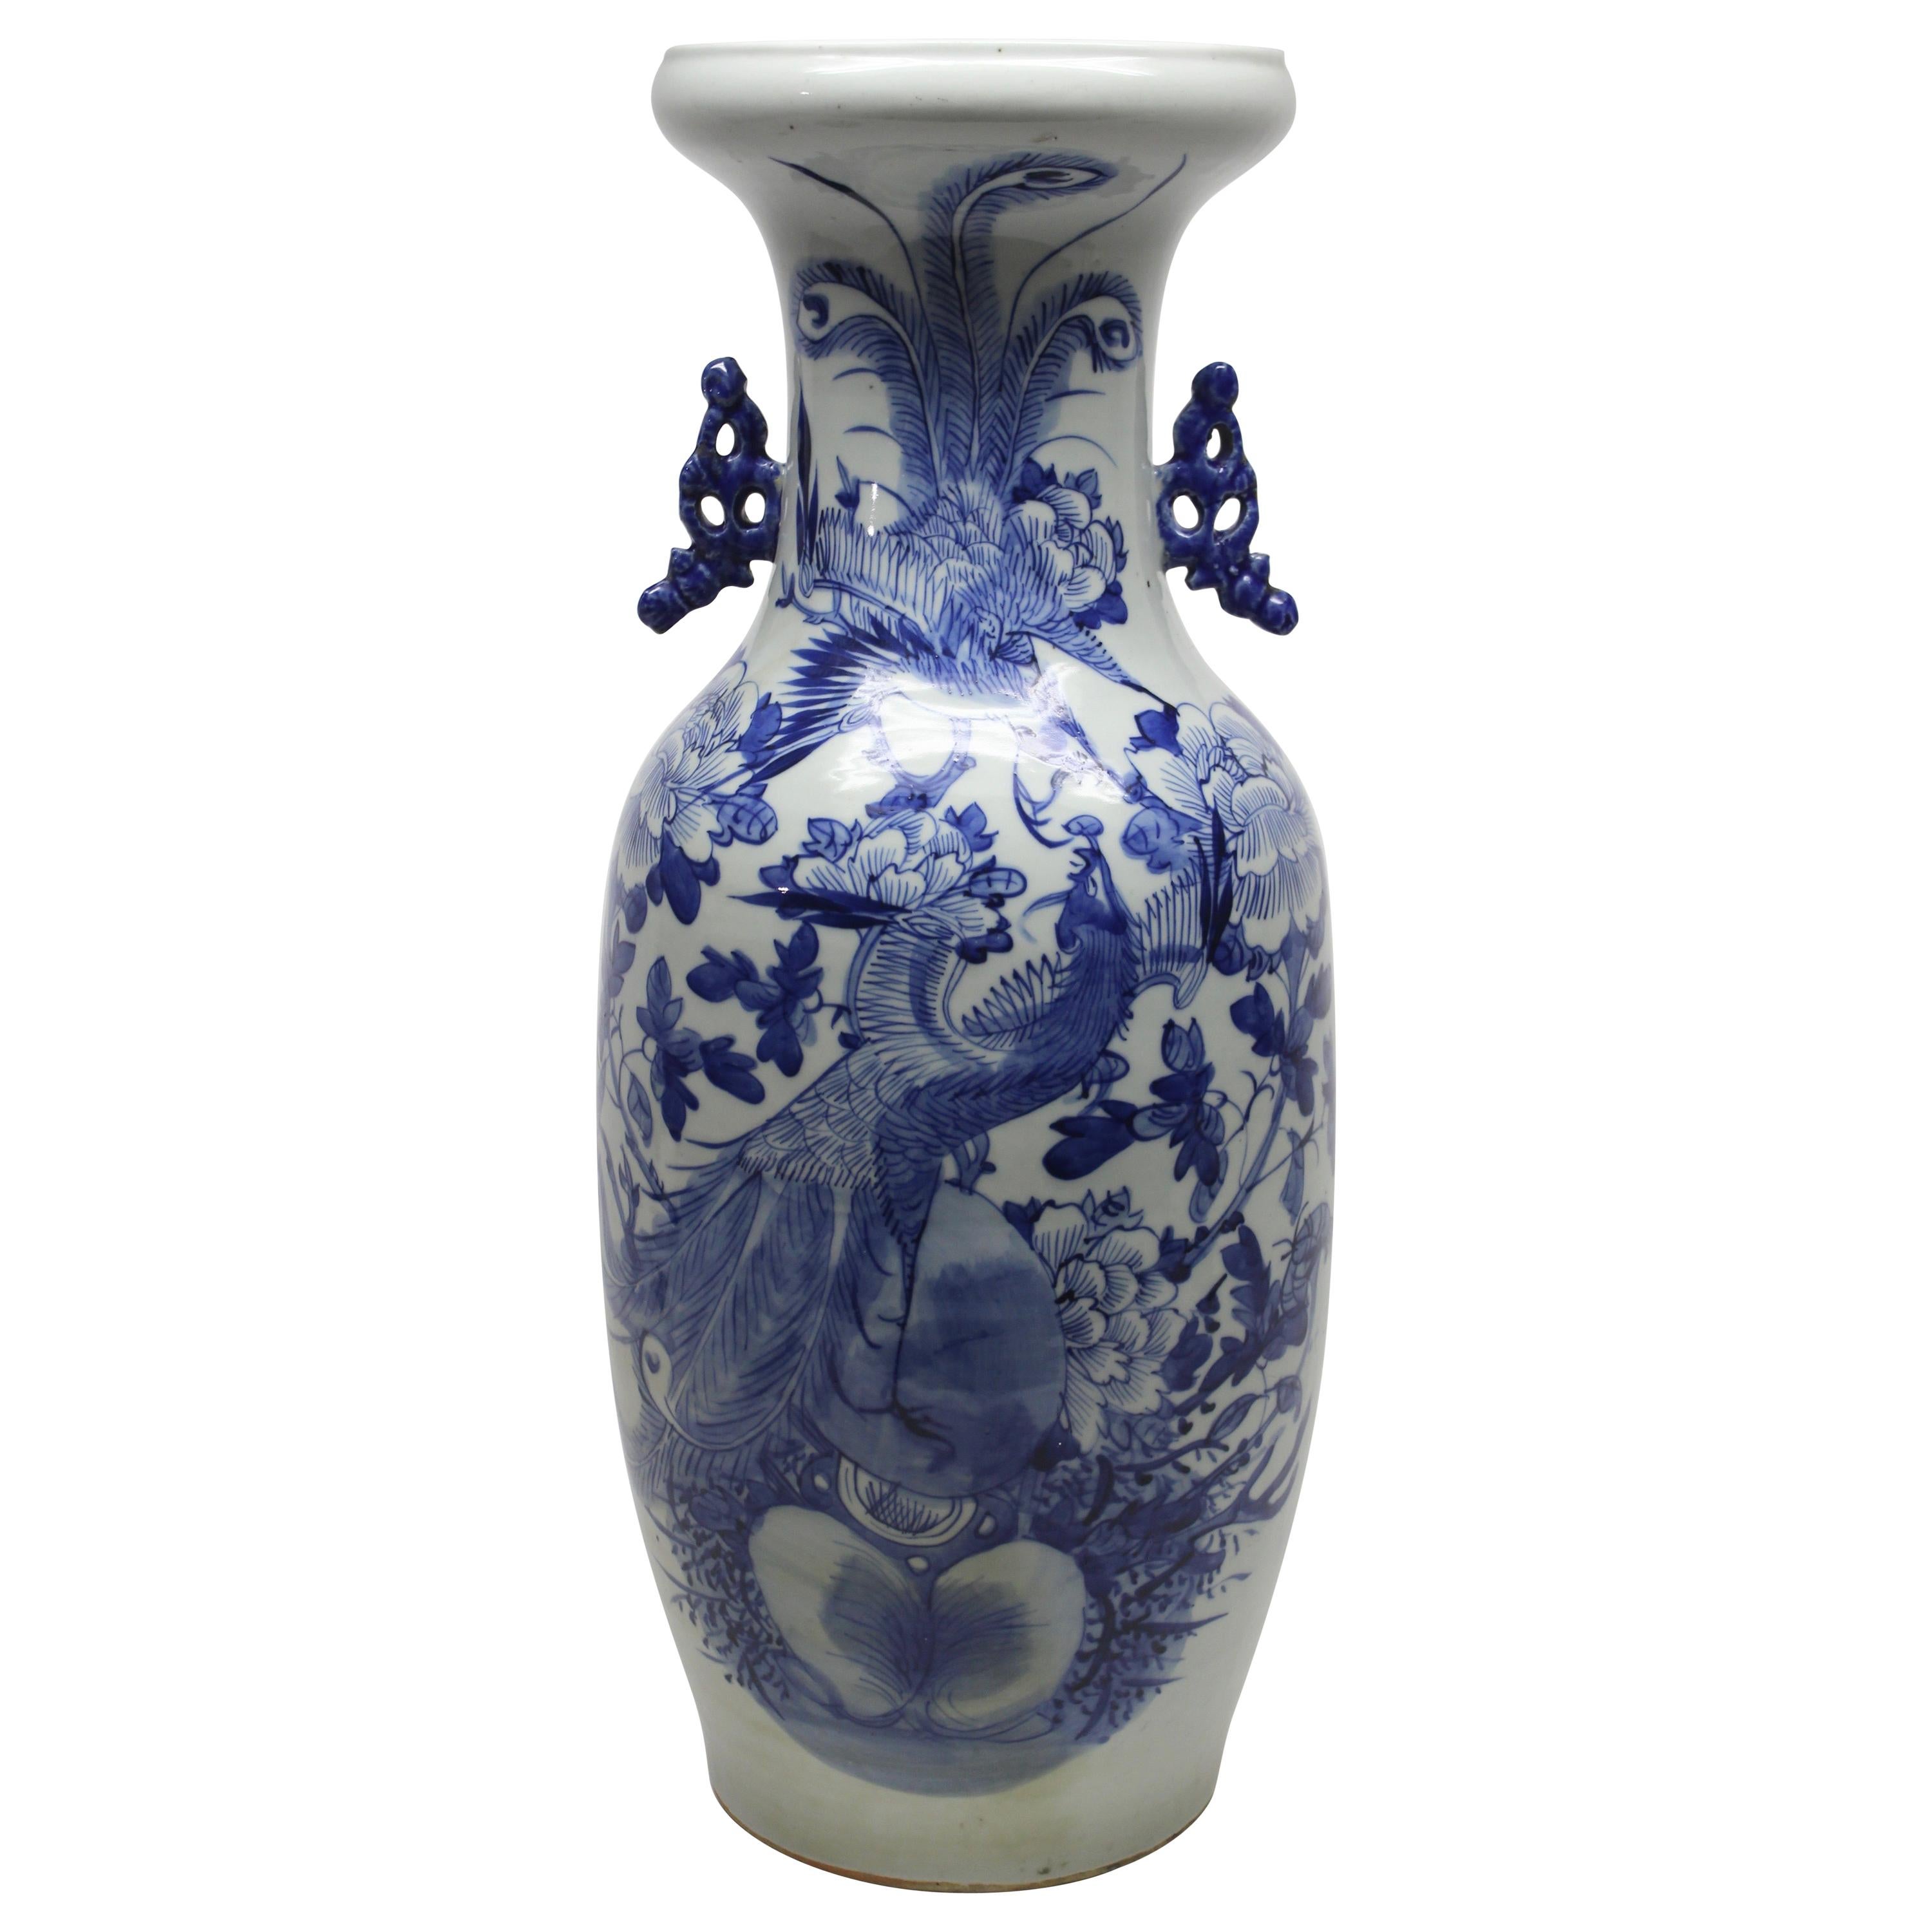 Chinesische blau-weiße Keramikvase